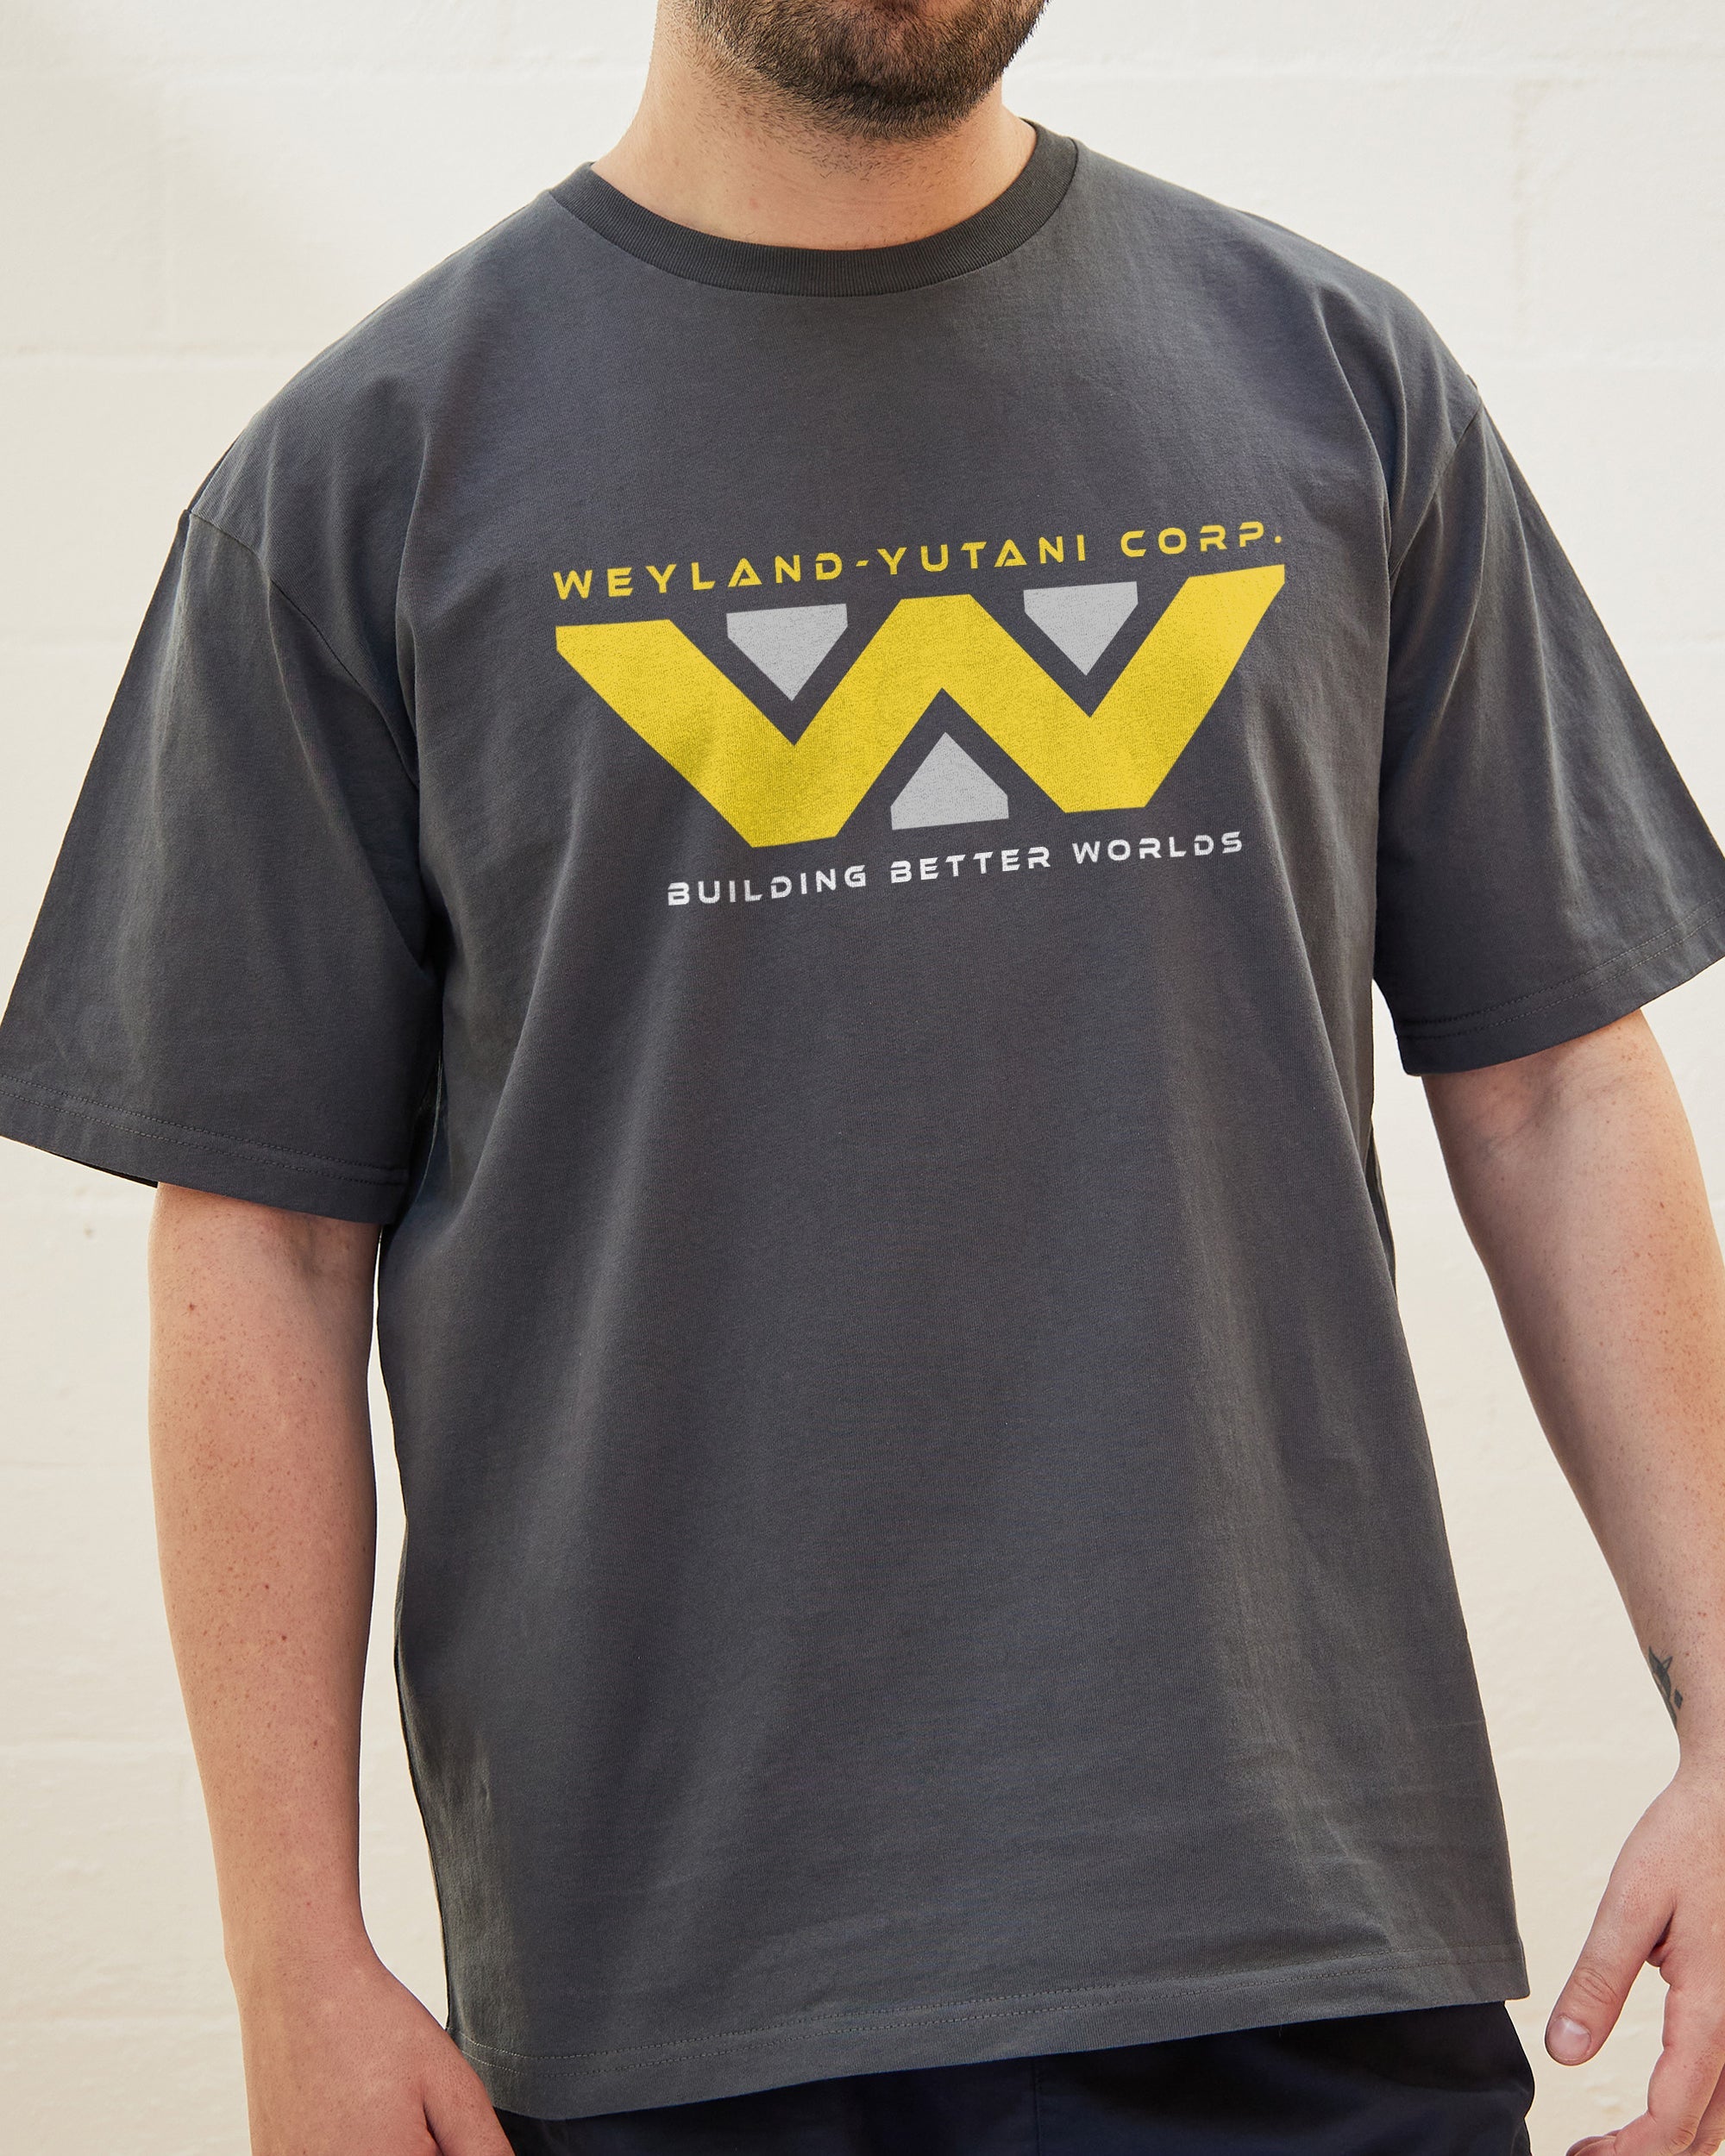 Weyland-Yutani Corp T-Shirt Australia Online Charcoal